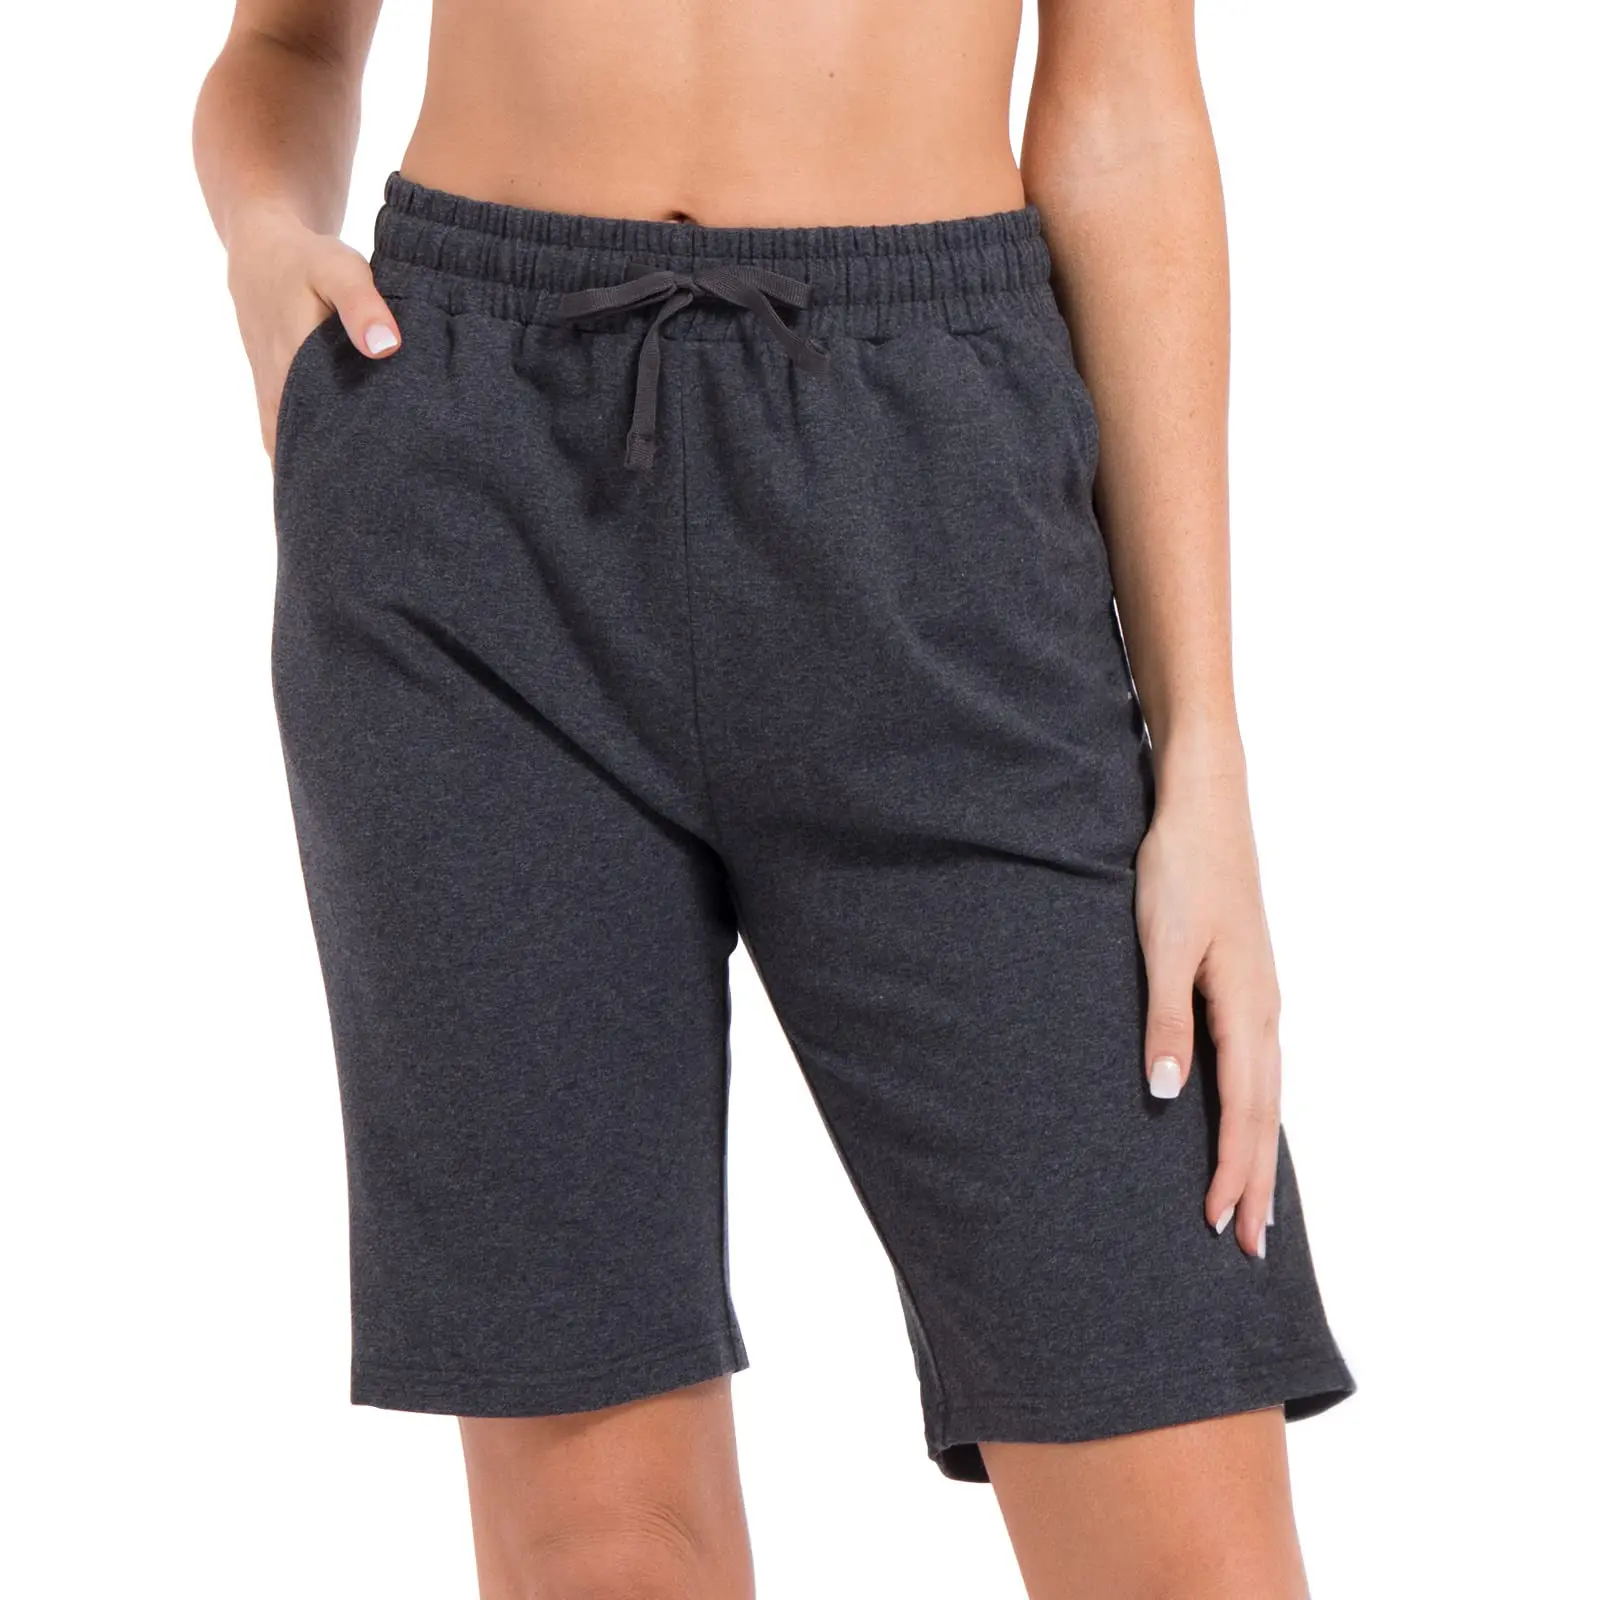 Vêtements de marque en gros Stock de lot de liquidation d'inventaire Marque de vêtements pour femmes Coton Gym Sweat Walking Jogger Sport Short